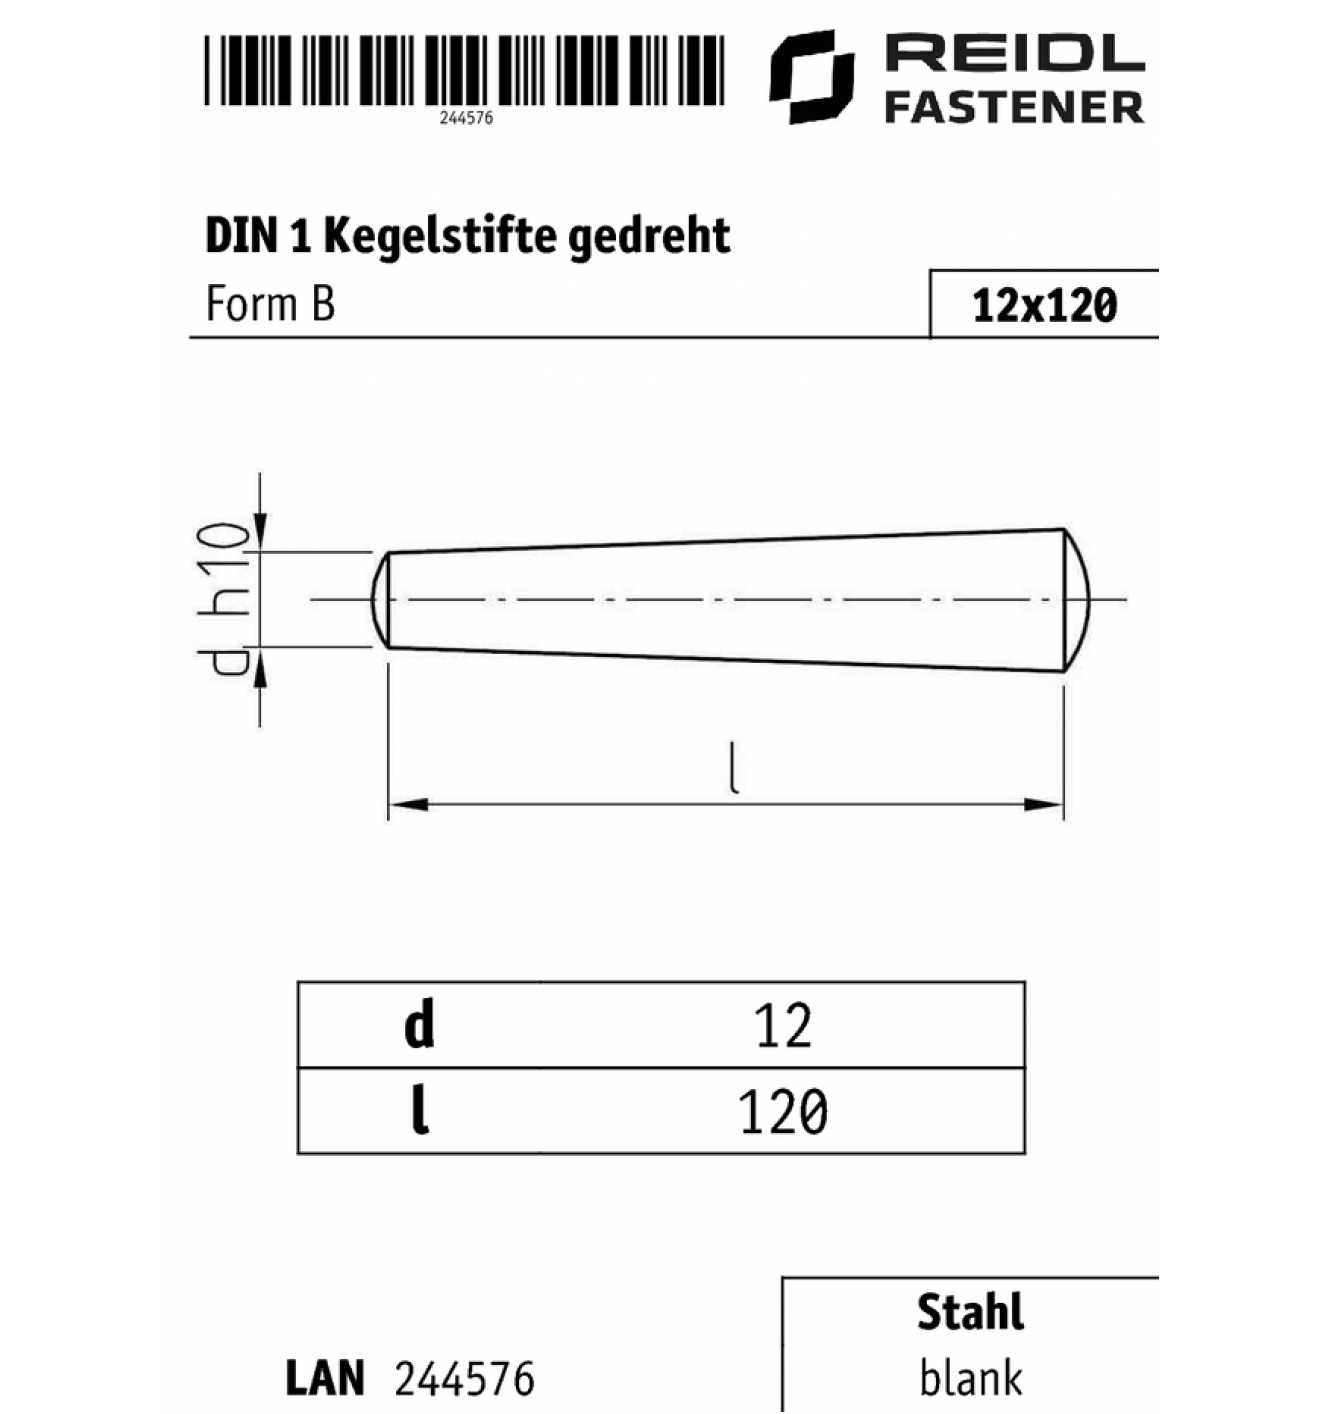 Kegelstifte DIN 1 Stahl blank Form B gedreht d 8-12 mm 